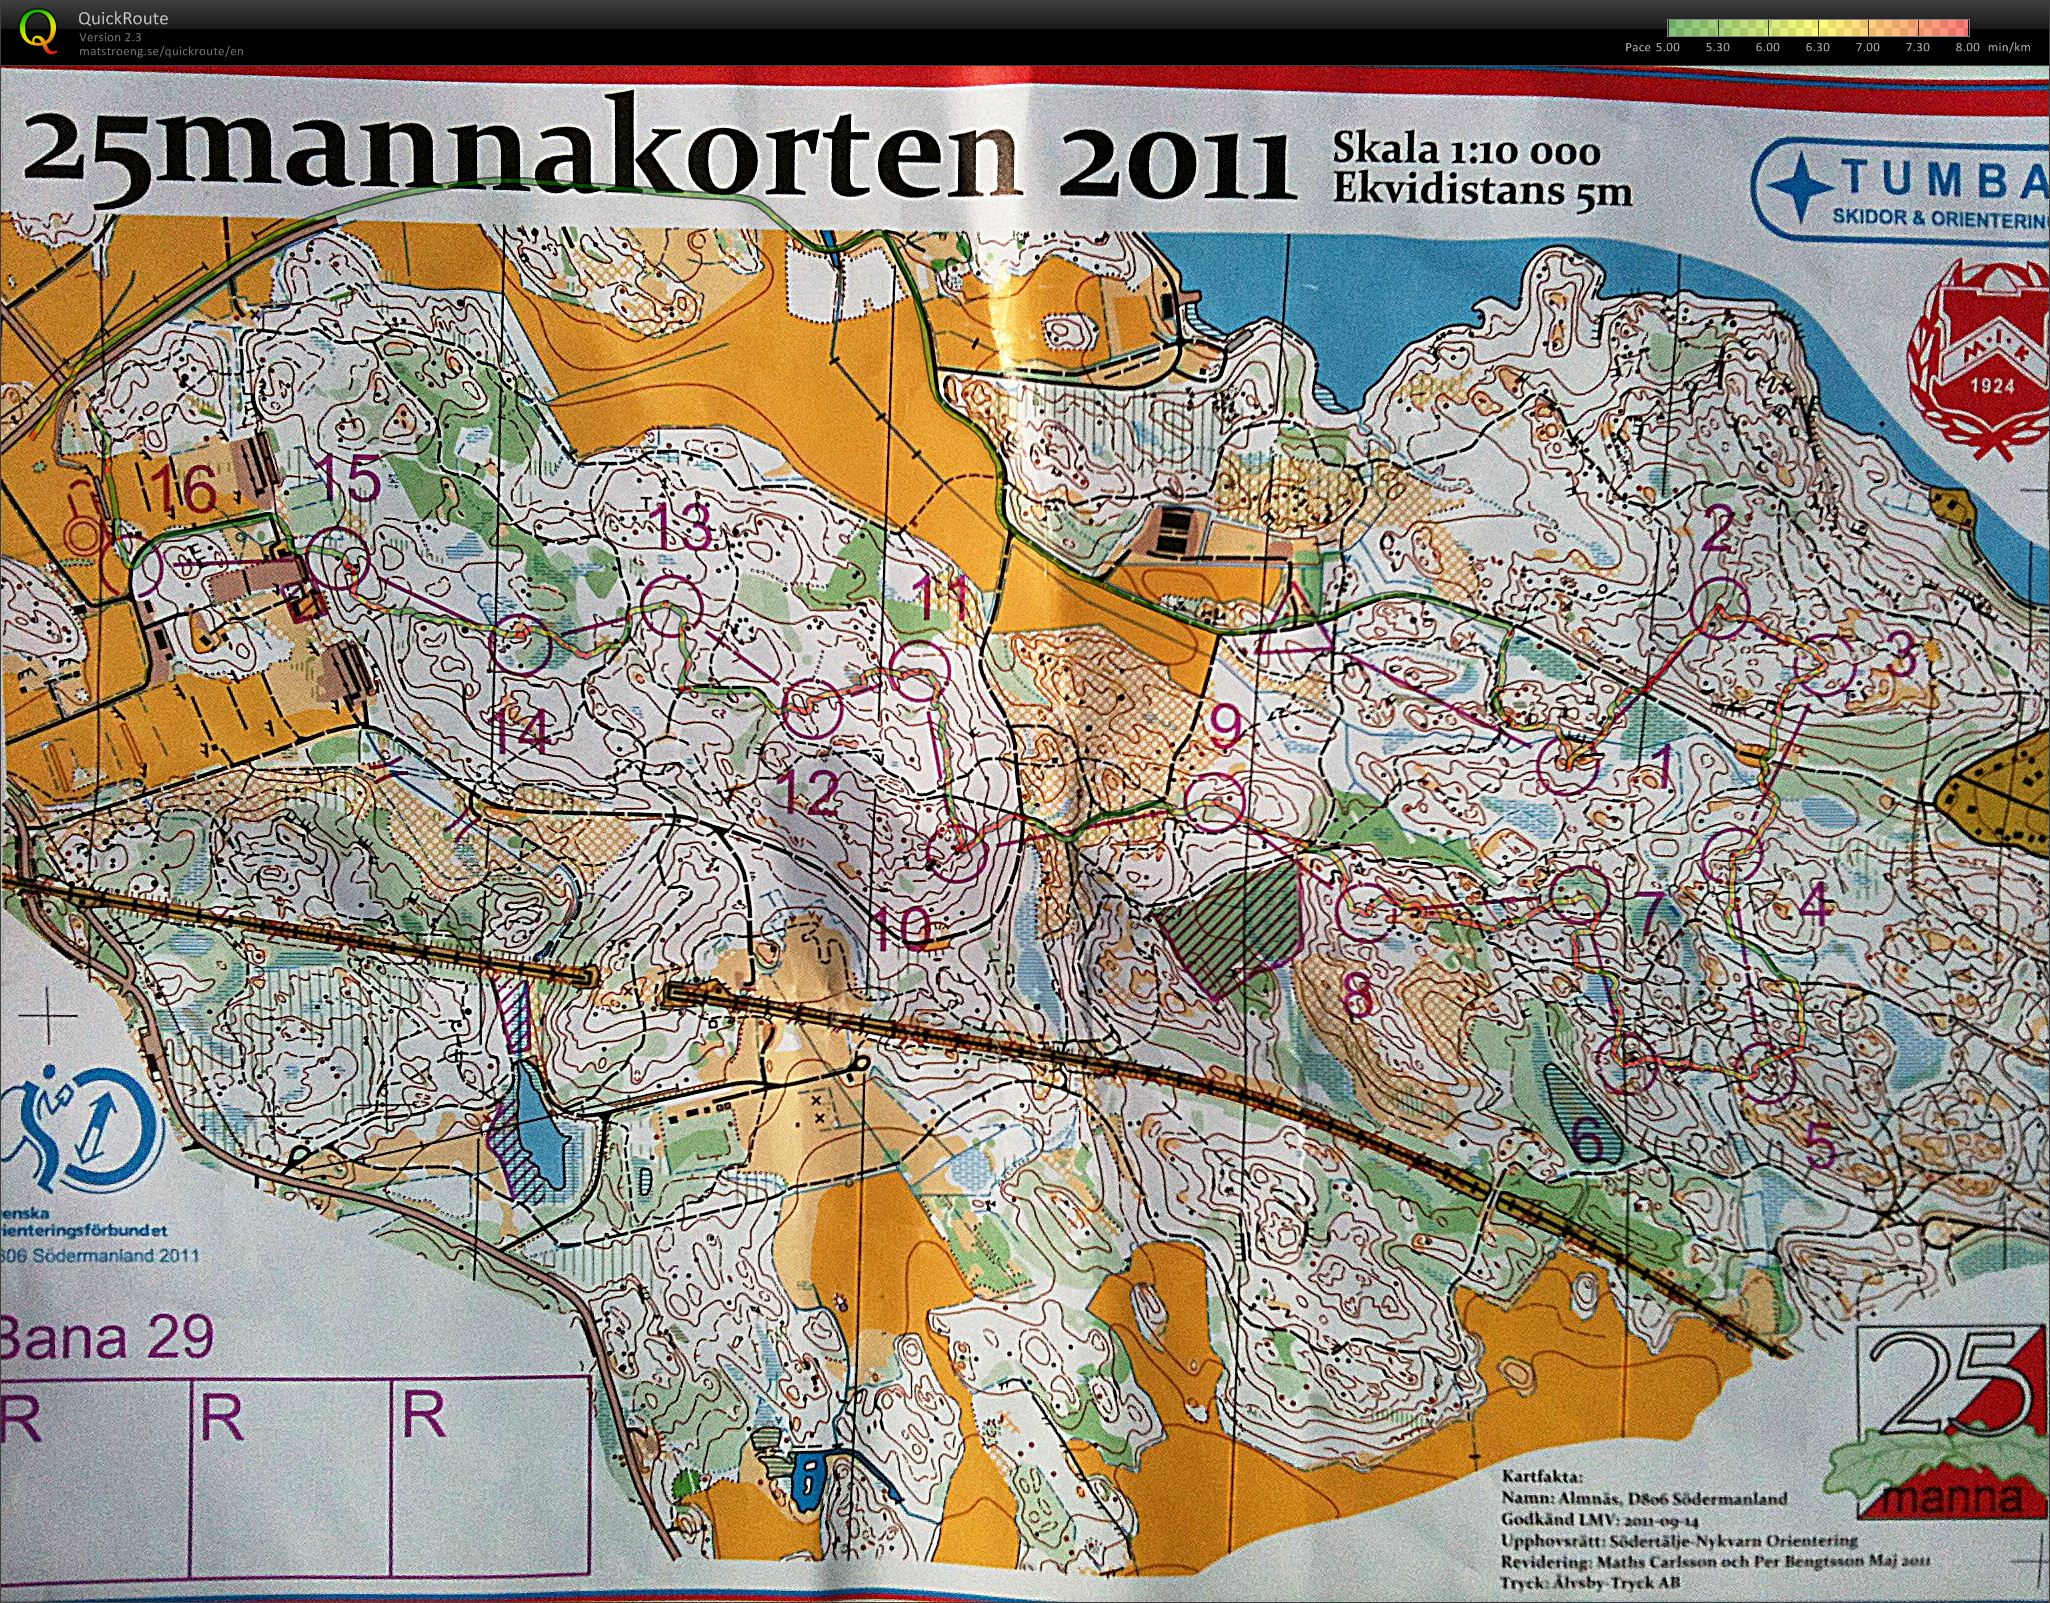 25mannakorten - H45 (2011-10-09)